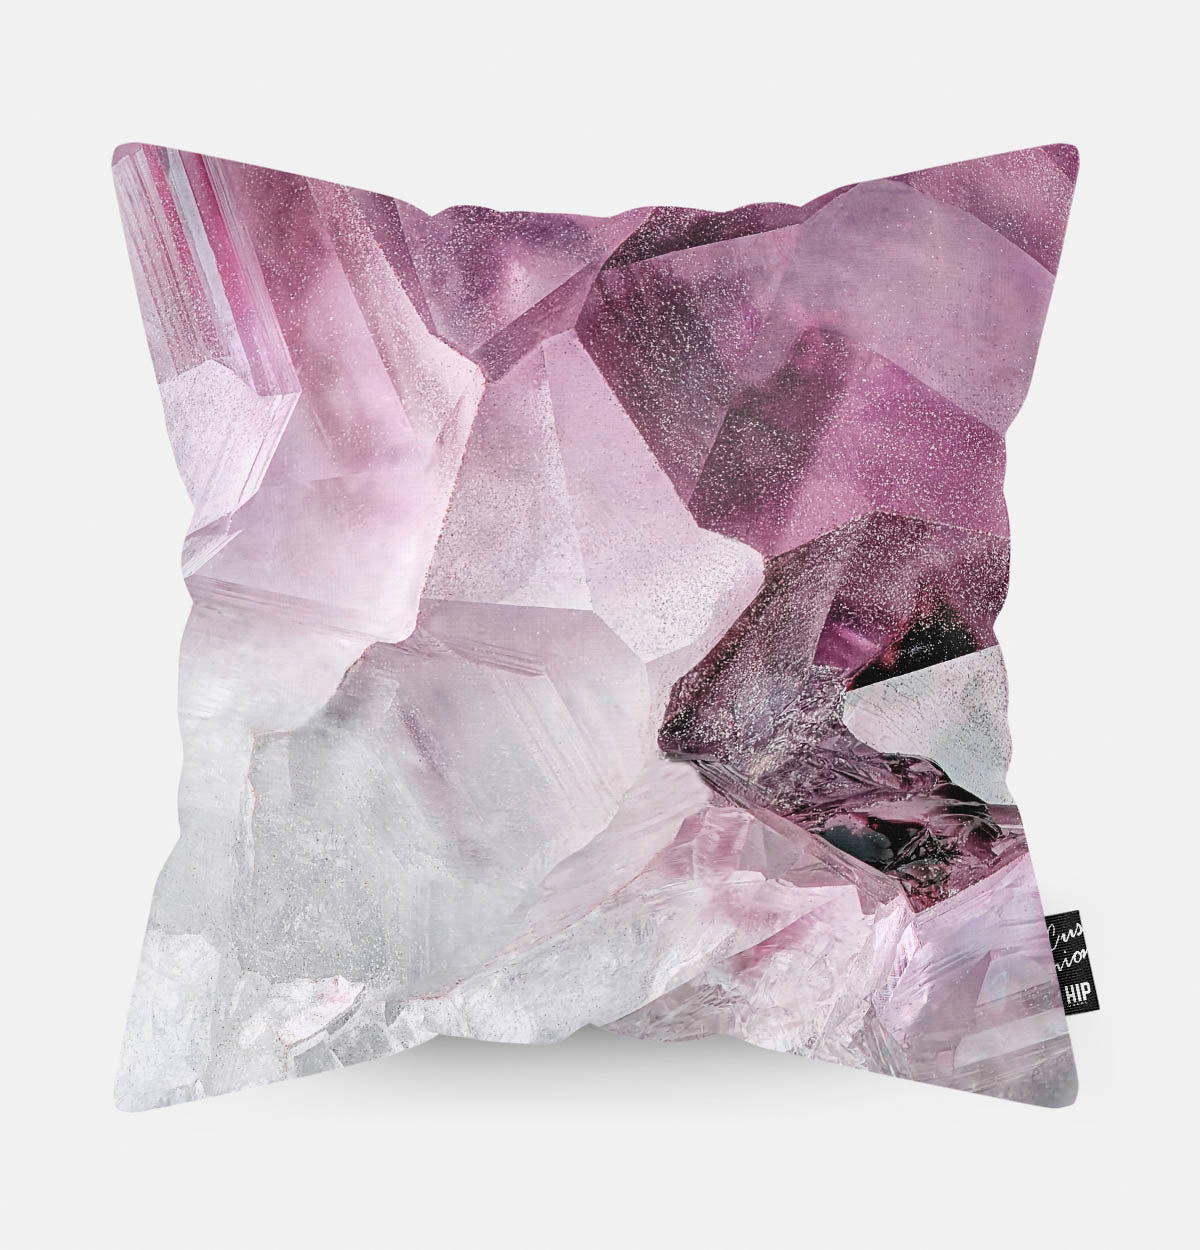 Kussen met paarse kristallen erop afgebeeld.